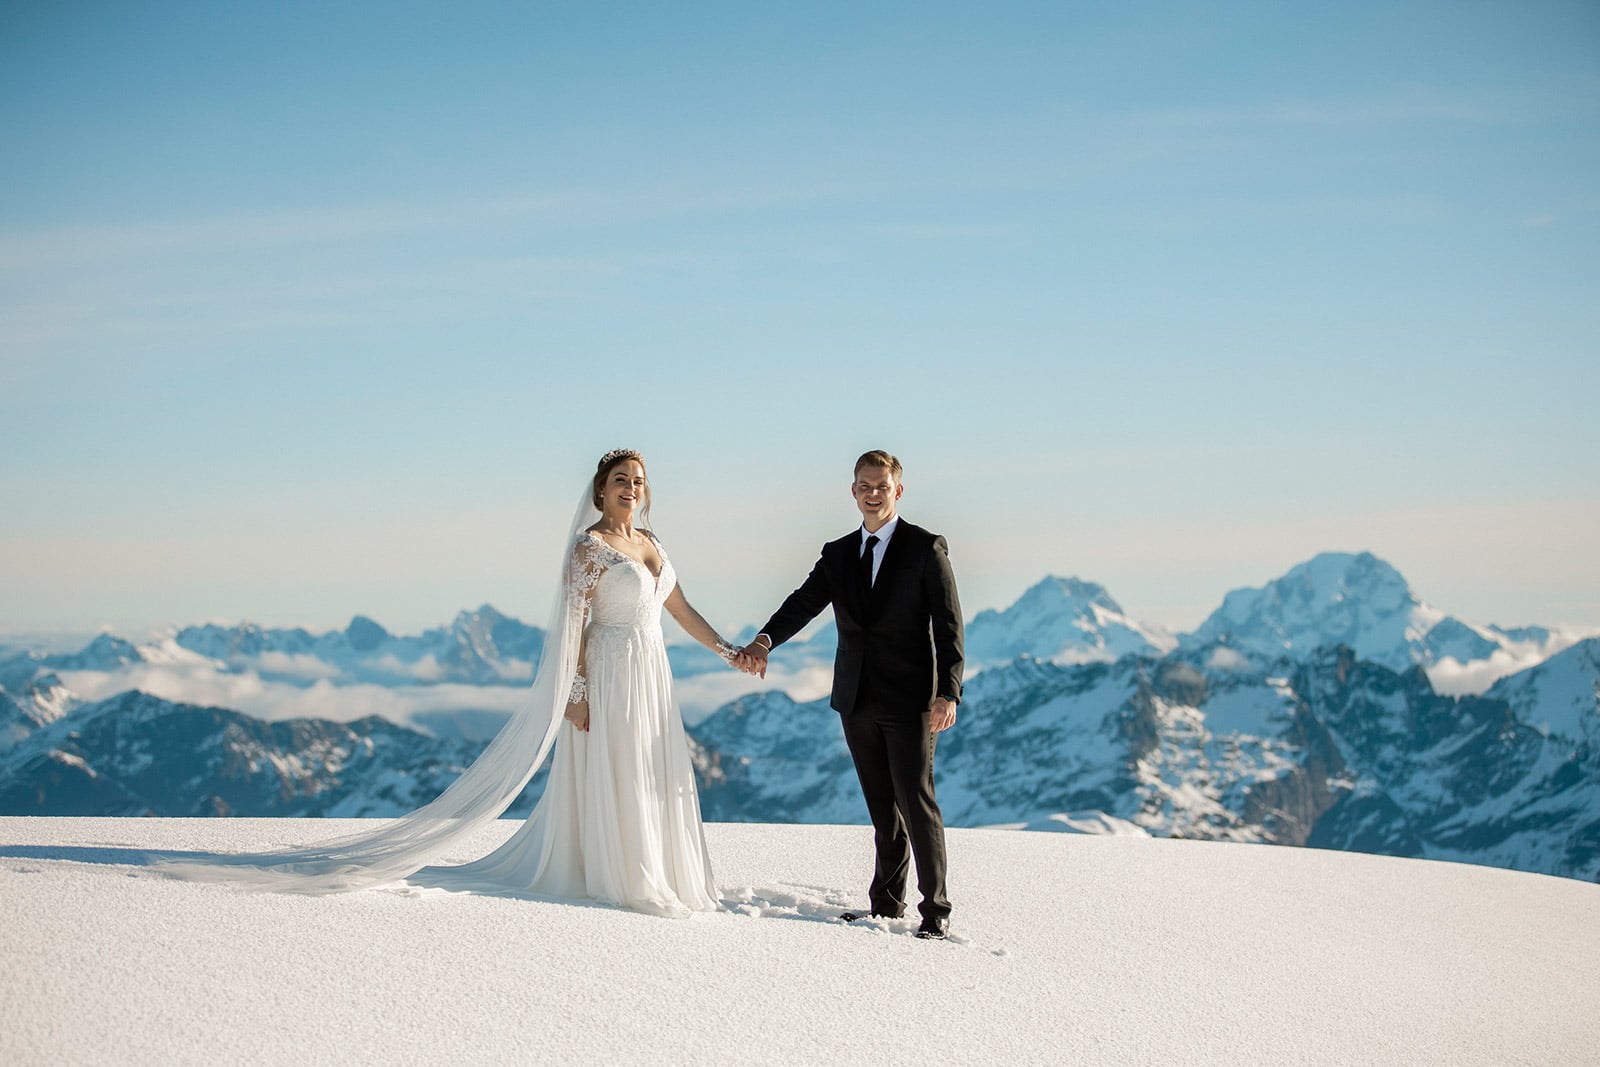 Winter Glacier wedding in Queenstown New Zealand